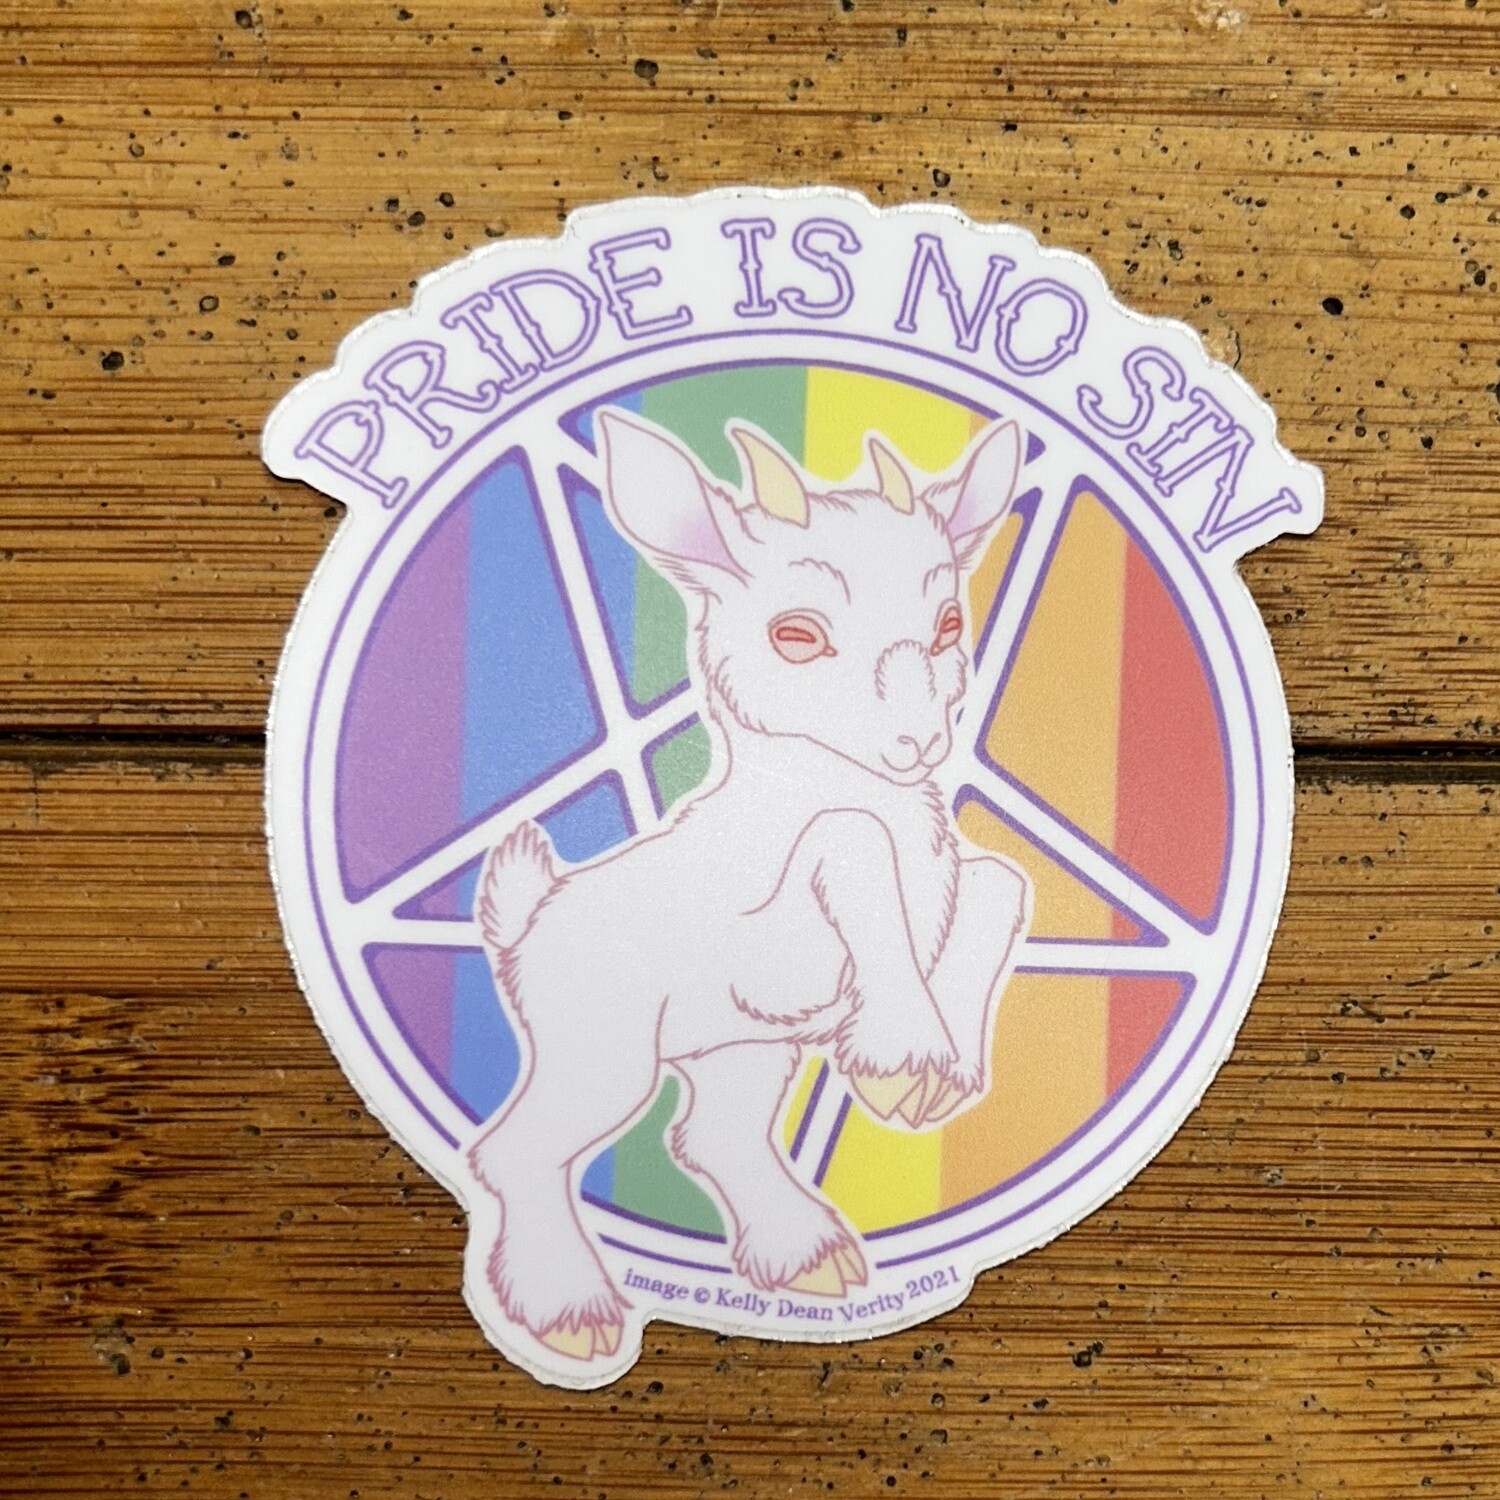 Pride Is No Sin (Gay Pride) - Sticker by Kelly Dean Verity